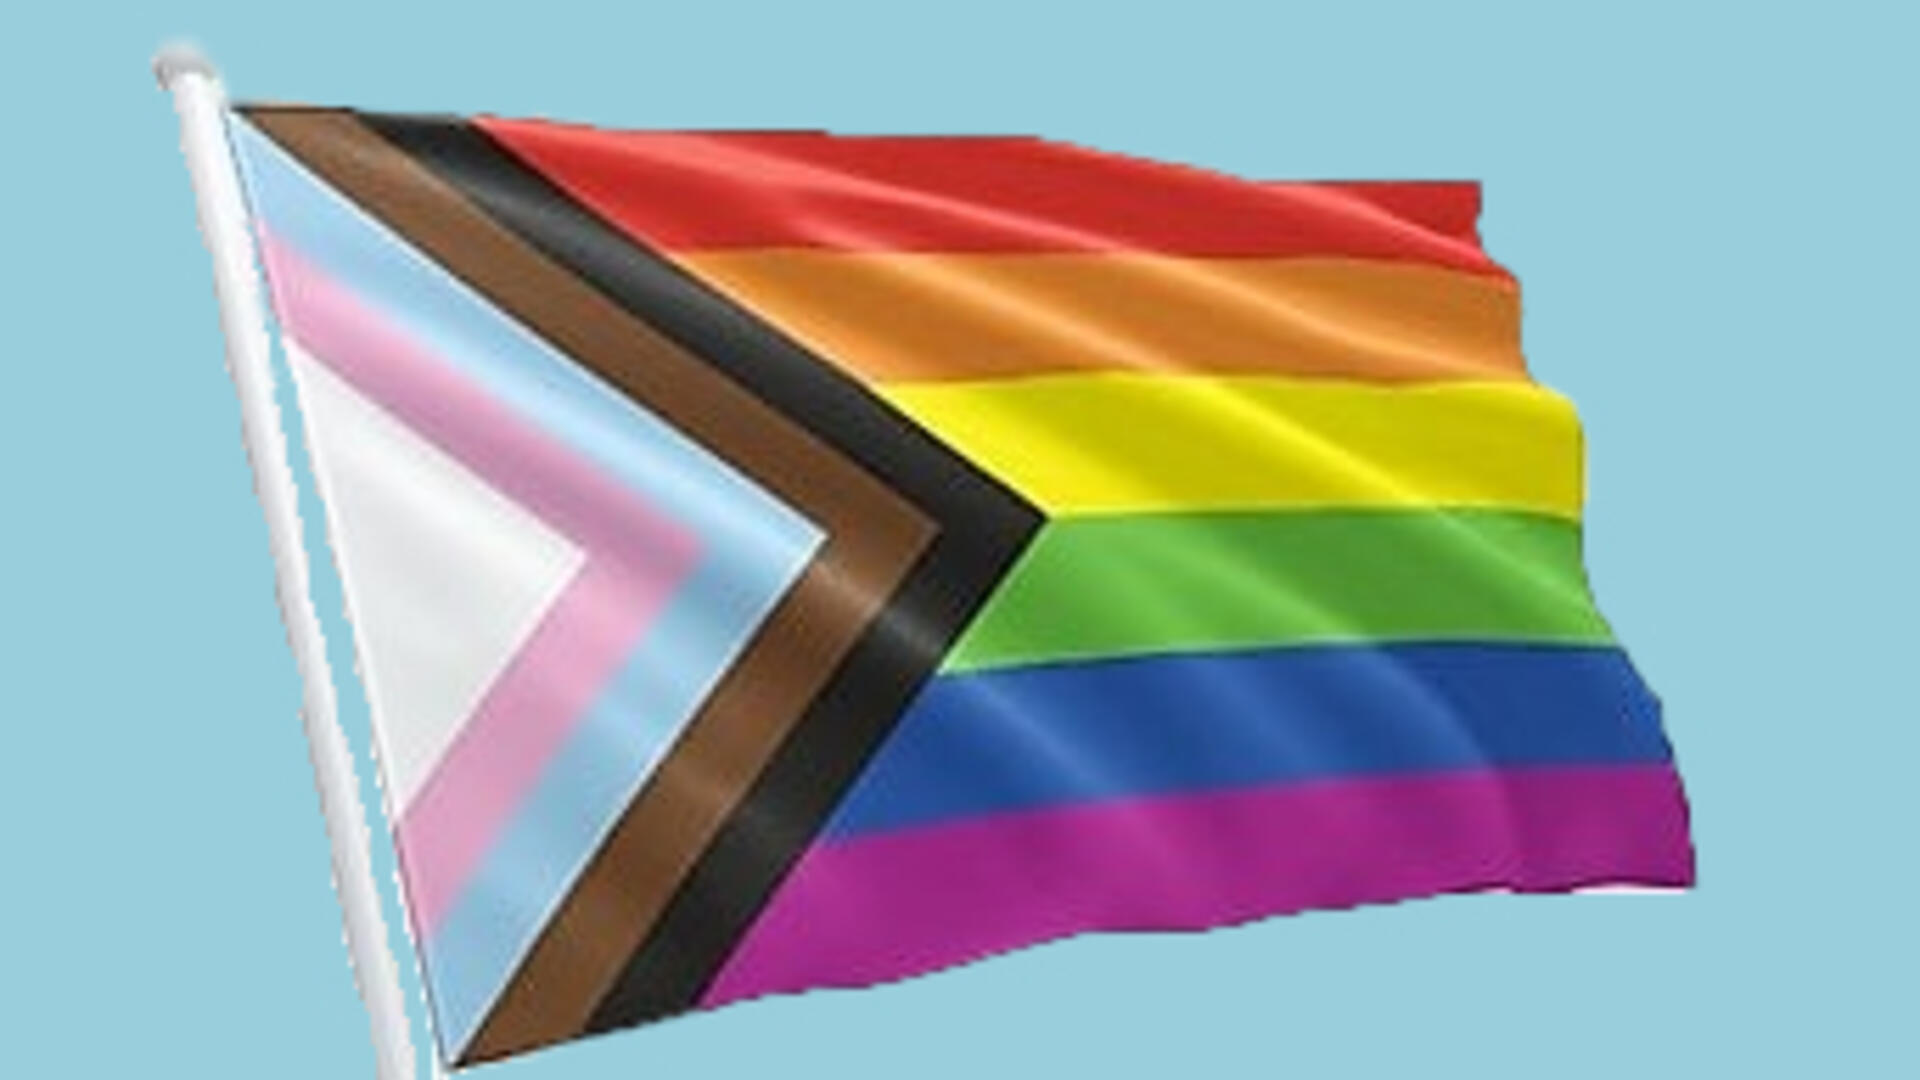 nieuwe regenboogvlag met een driehoekig patroon ingevoegd met nieuwe kleuren